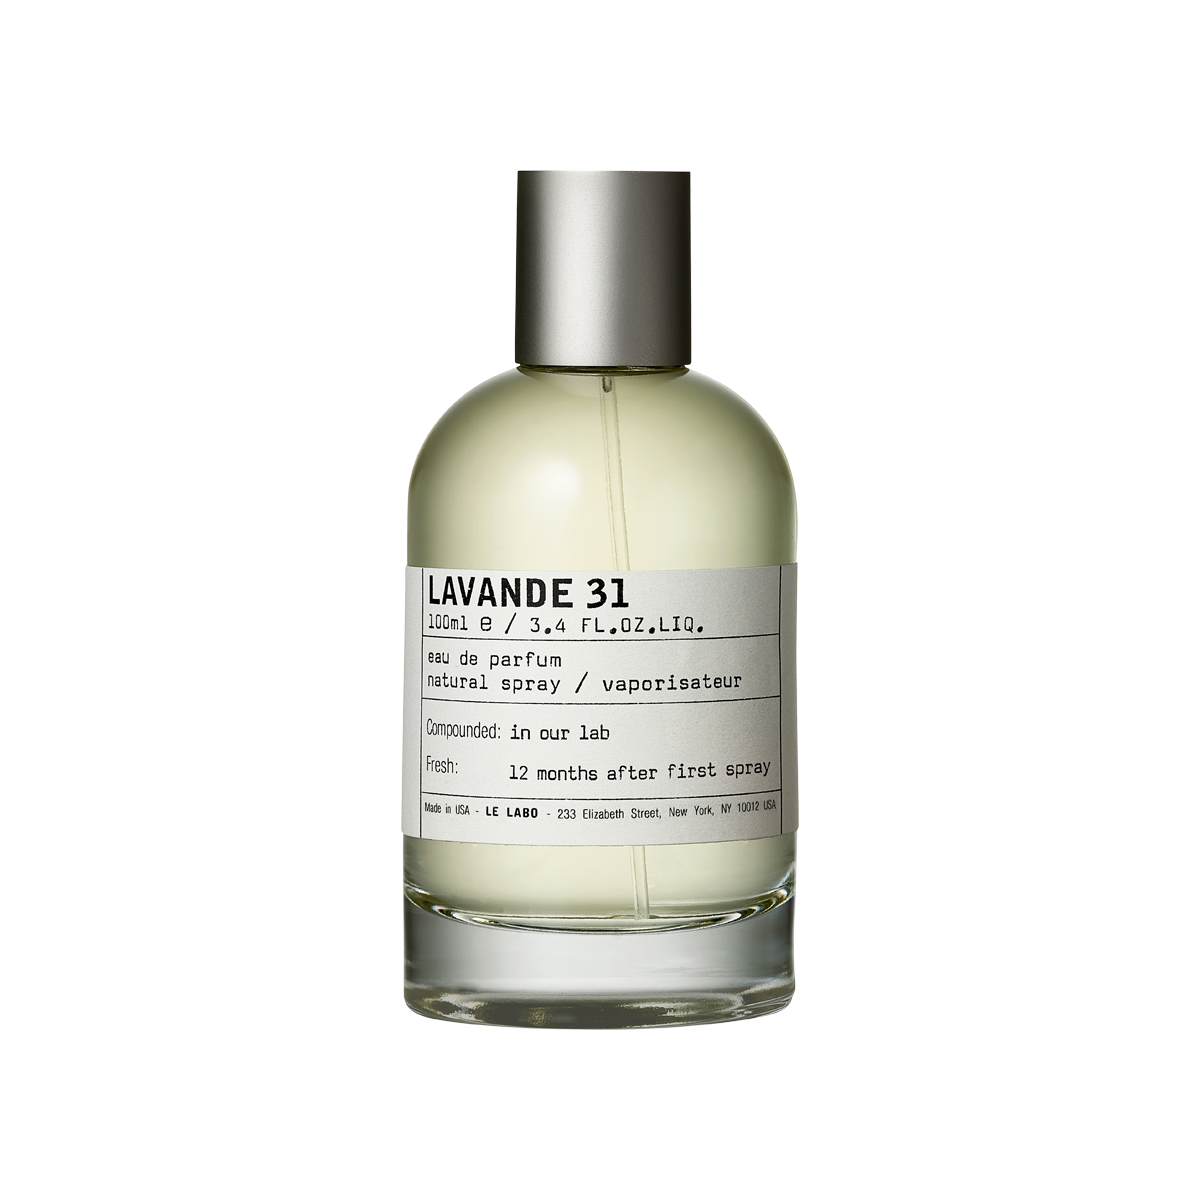 Le Labo fragrances - Lavande 31 Eau de Parfum